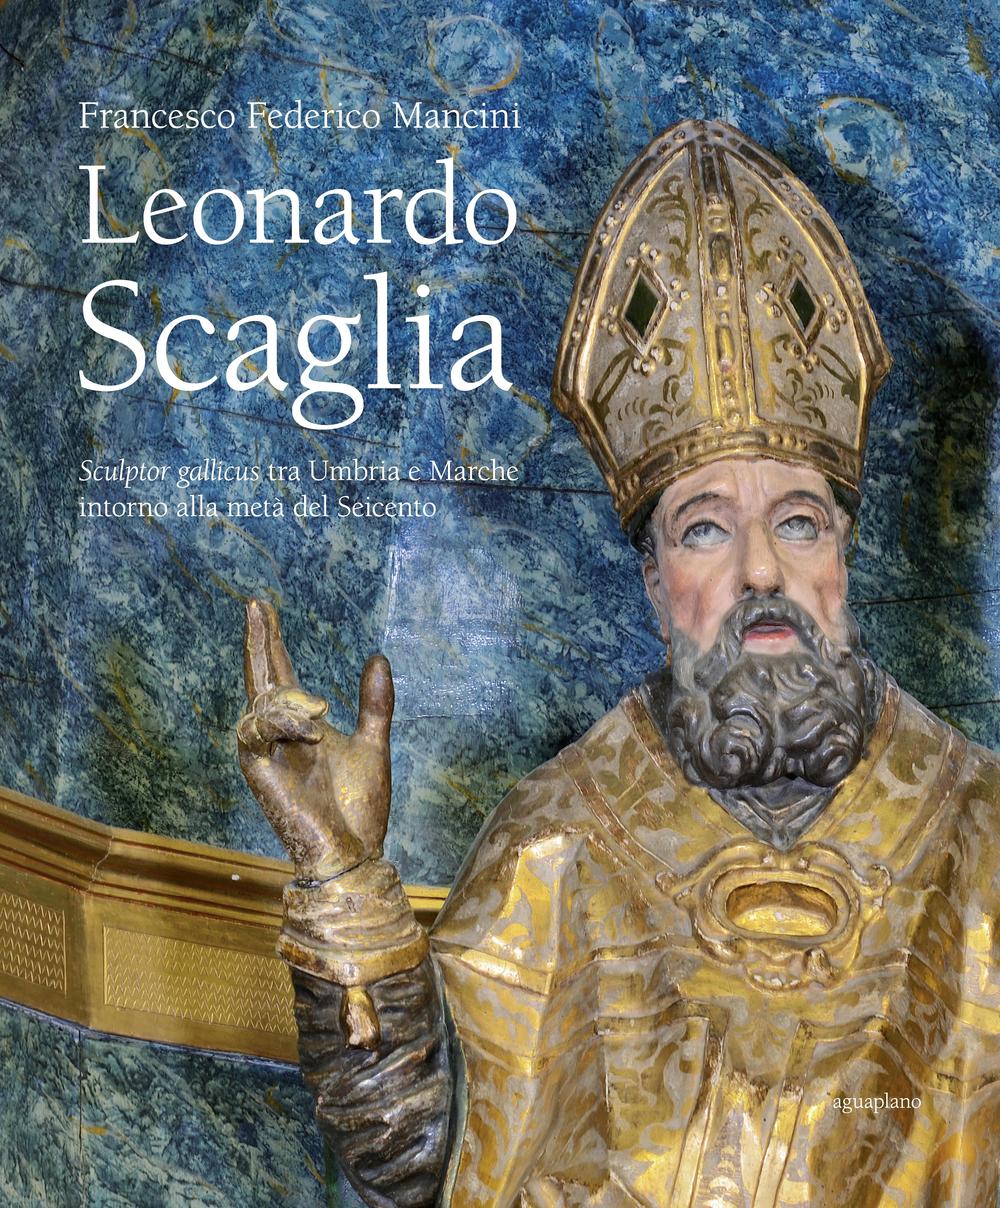 Leonardo Scaglia. Sculptor gallicus tra Umbria e Marche intorno alla metà del Seicento. Ediz. illustrata